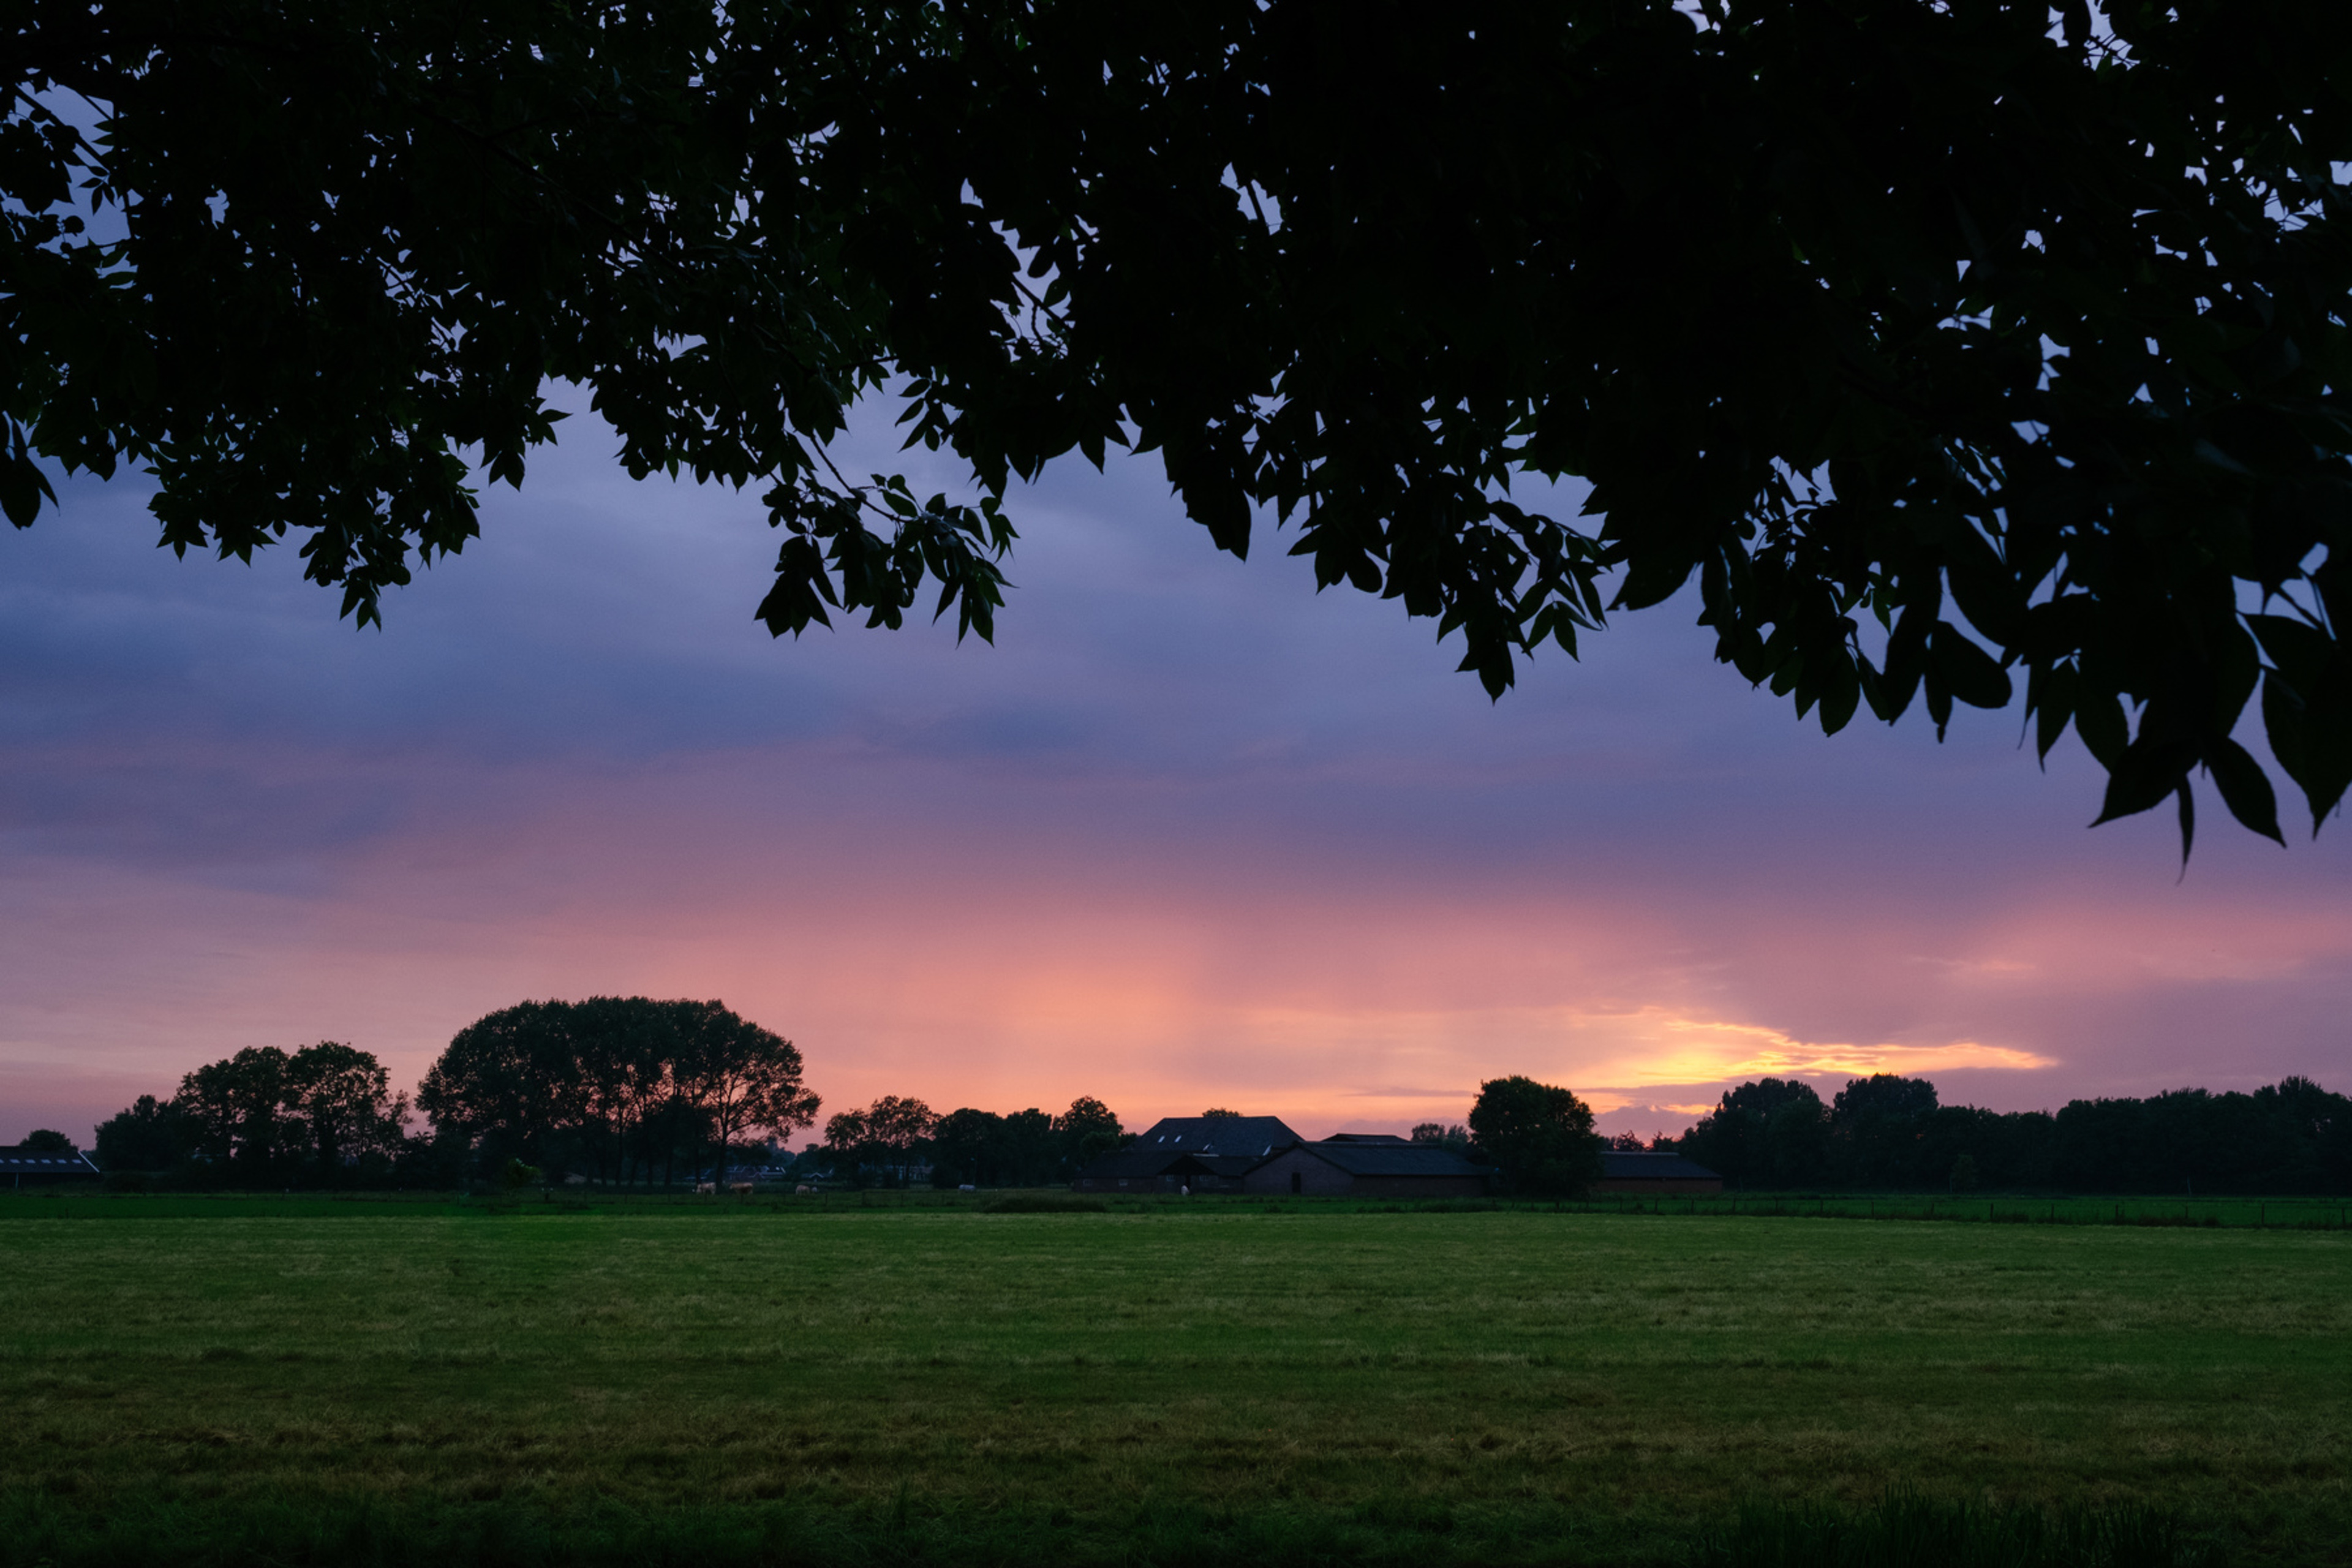 Dutch_Sunset_By_Rutger_Heijmerikx.jpg